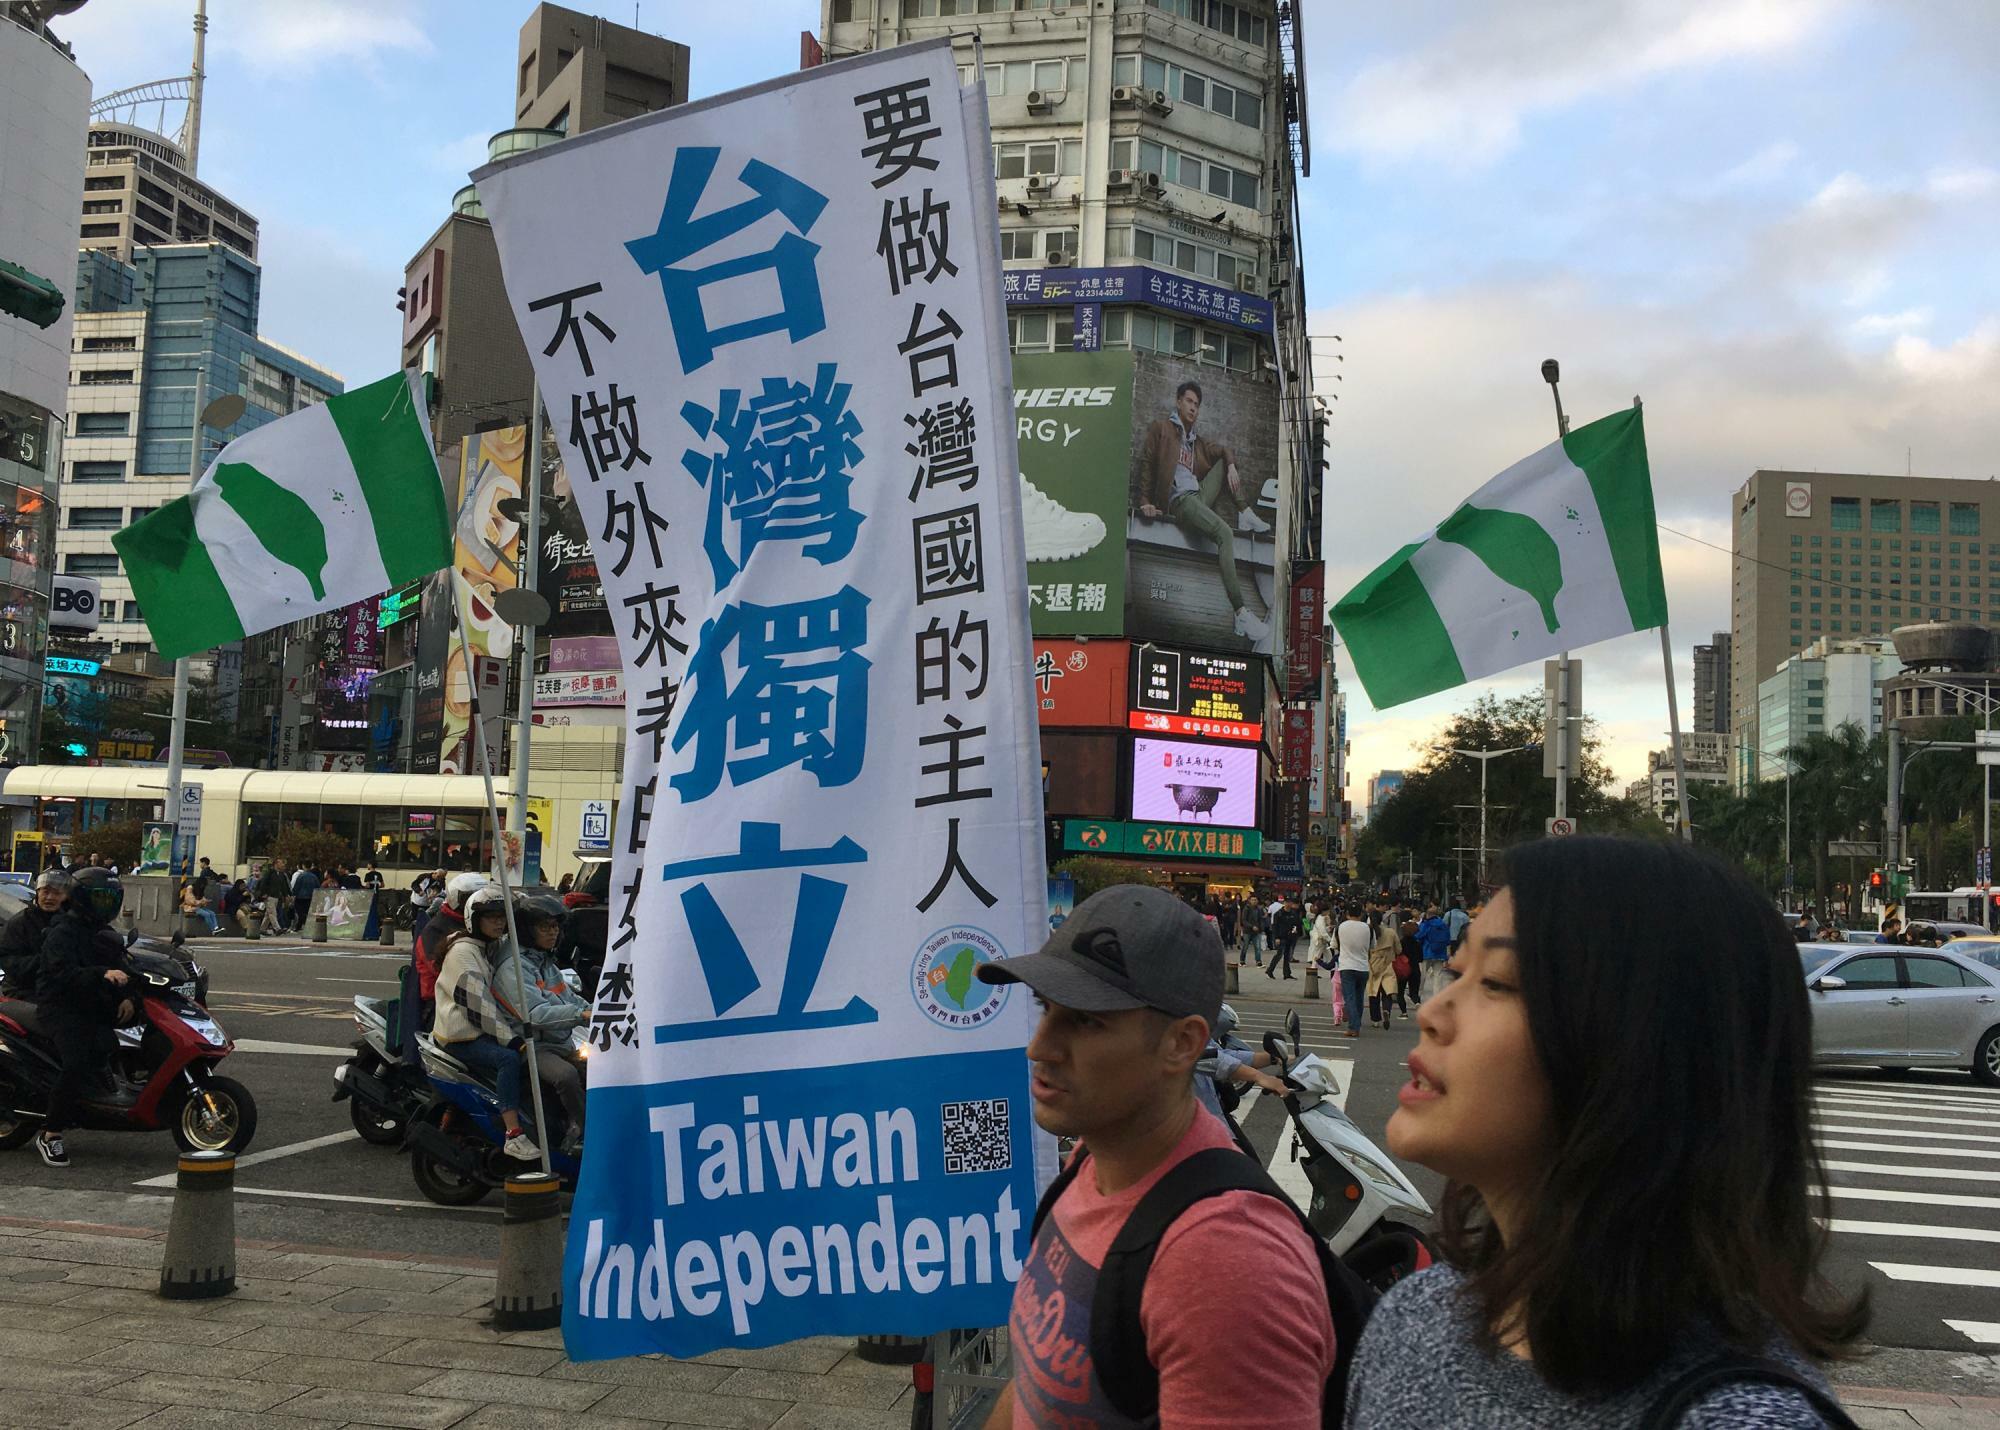 「台湾独立」を掲げるデモ隊（2019.12.14）。中国は香港と同様に台湾にも「一国二制度」のもとでの統一を呼びかけているが、香港デモに対する中国当局の苛烈な弾圧が台湾で警戒心を強めた。